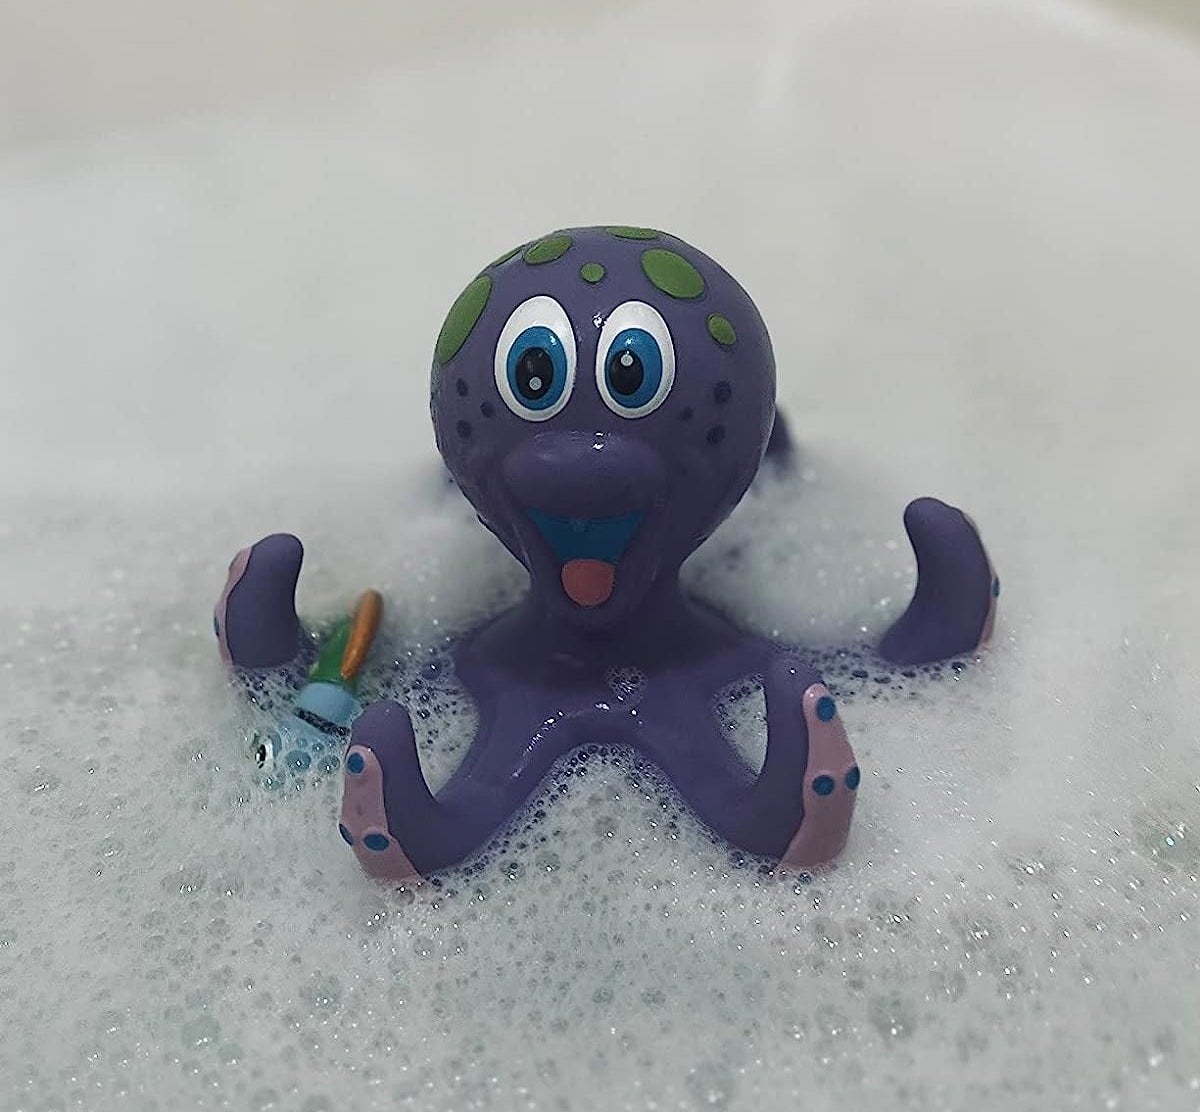 Toy in bubble bath